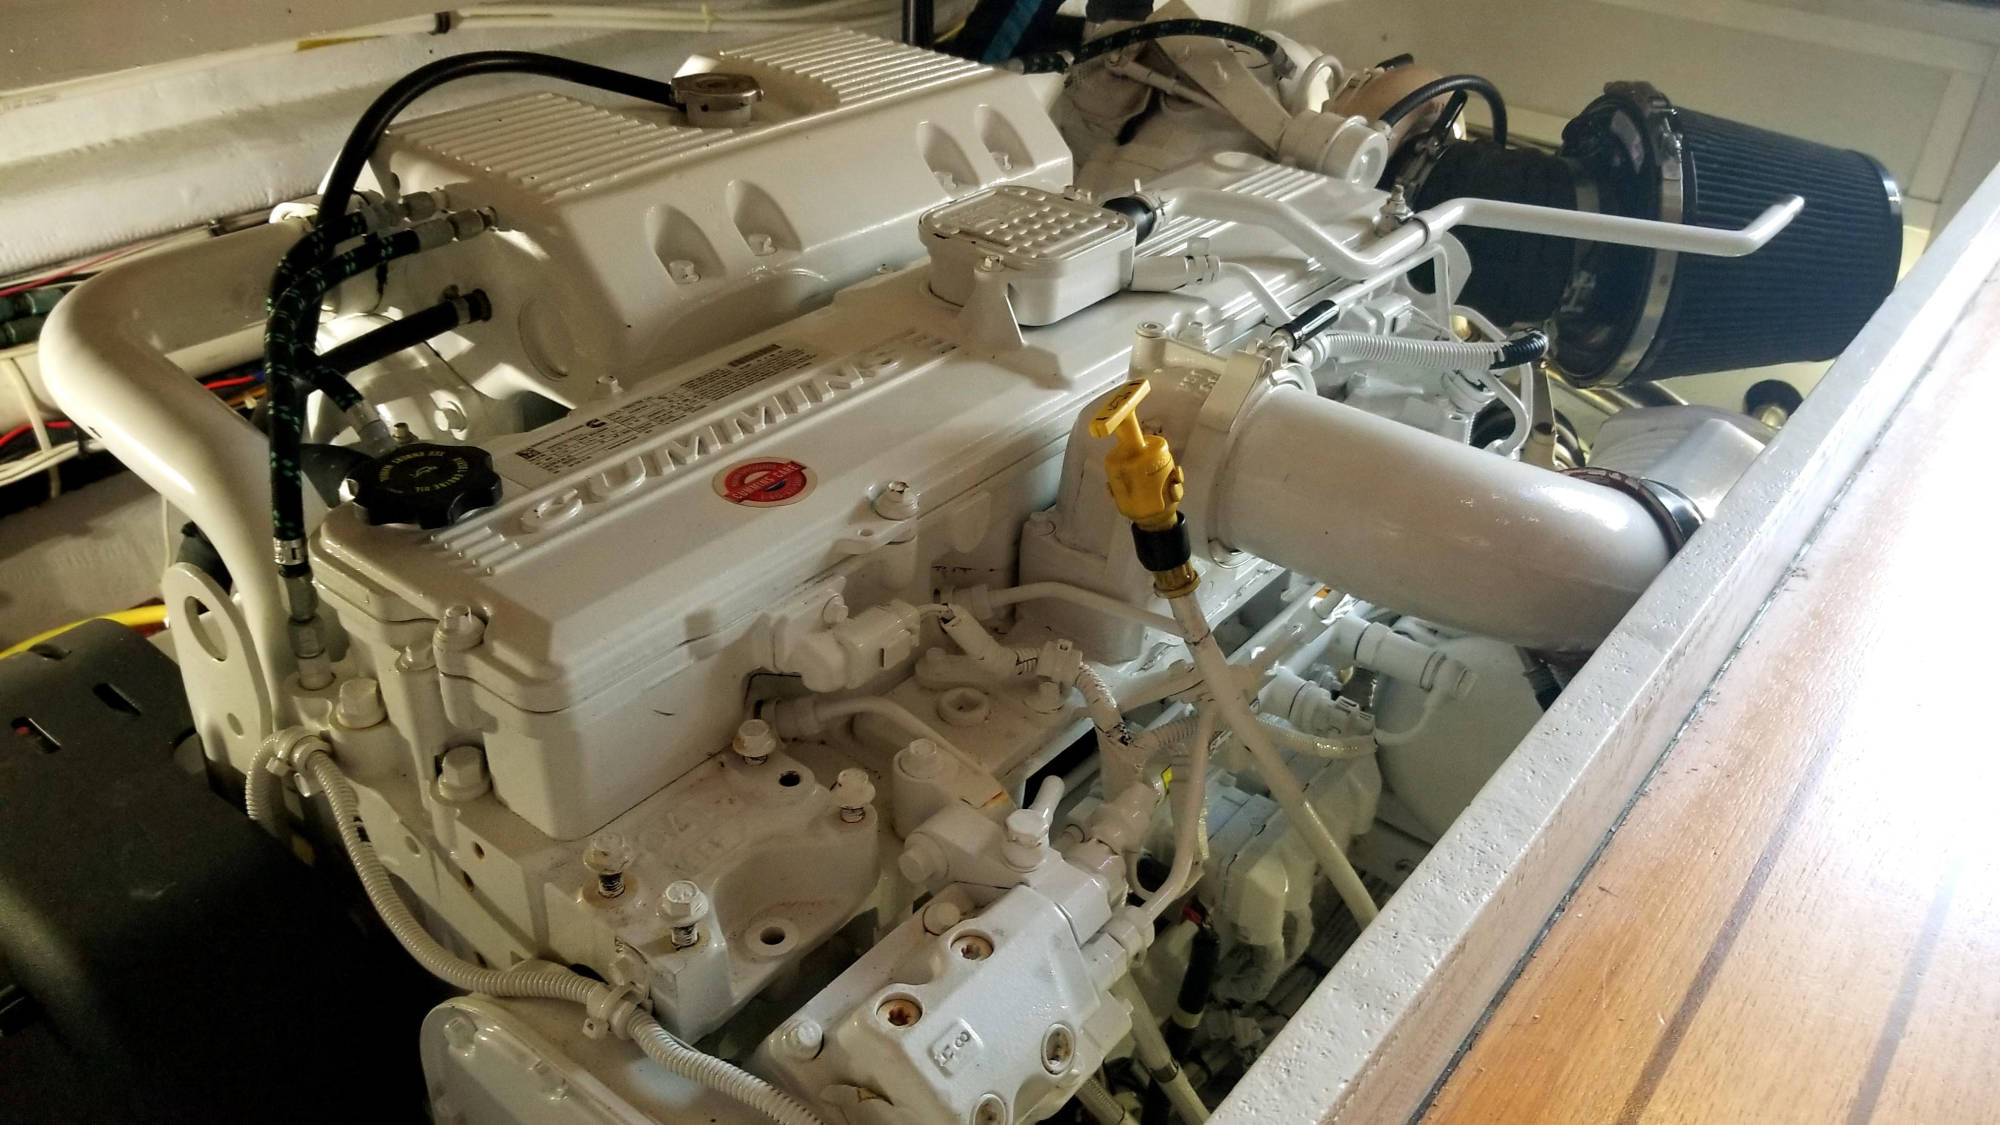 Cummins Marine Diesel Engine